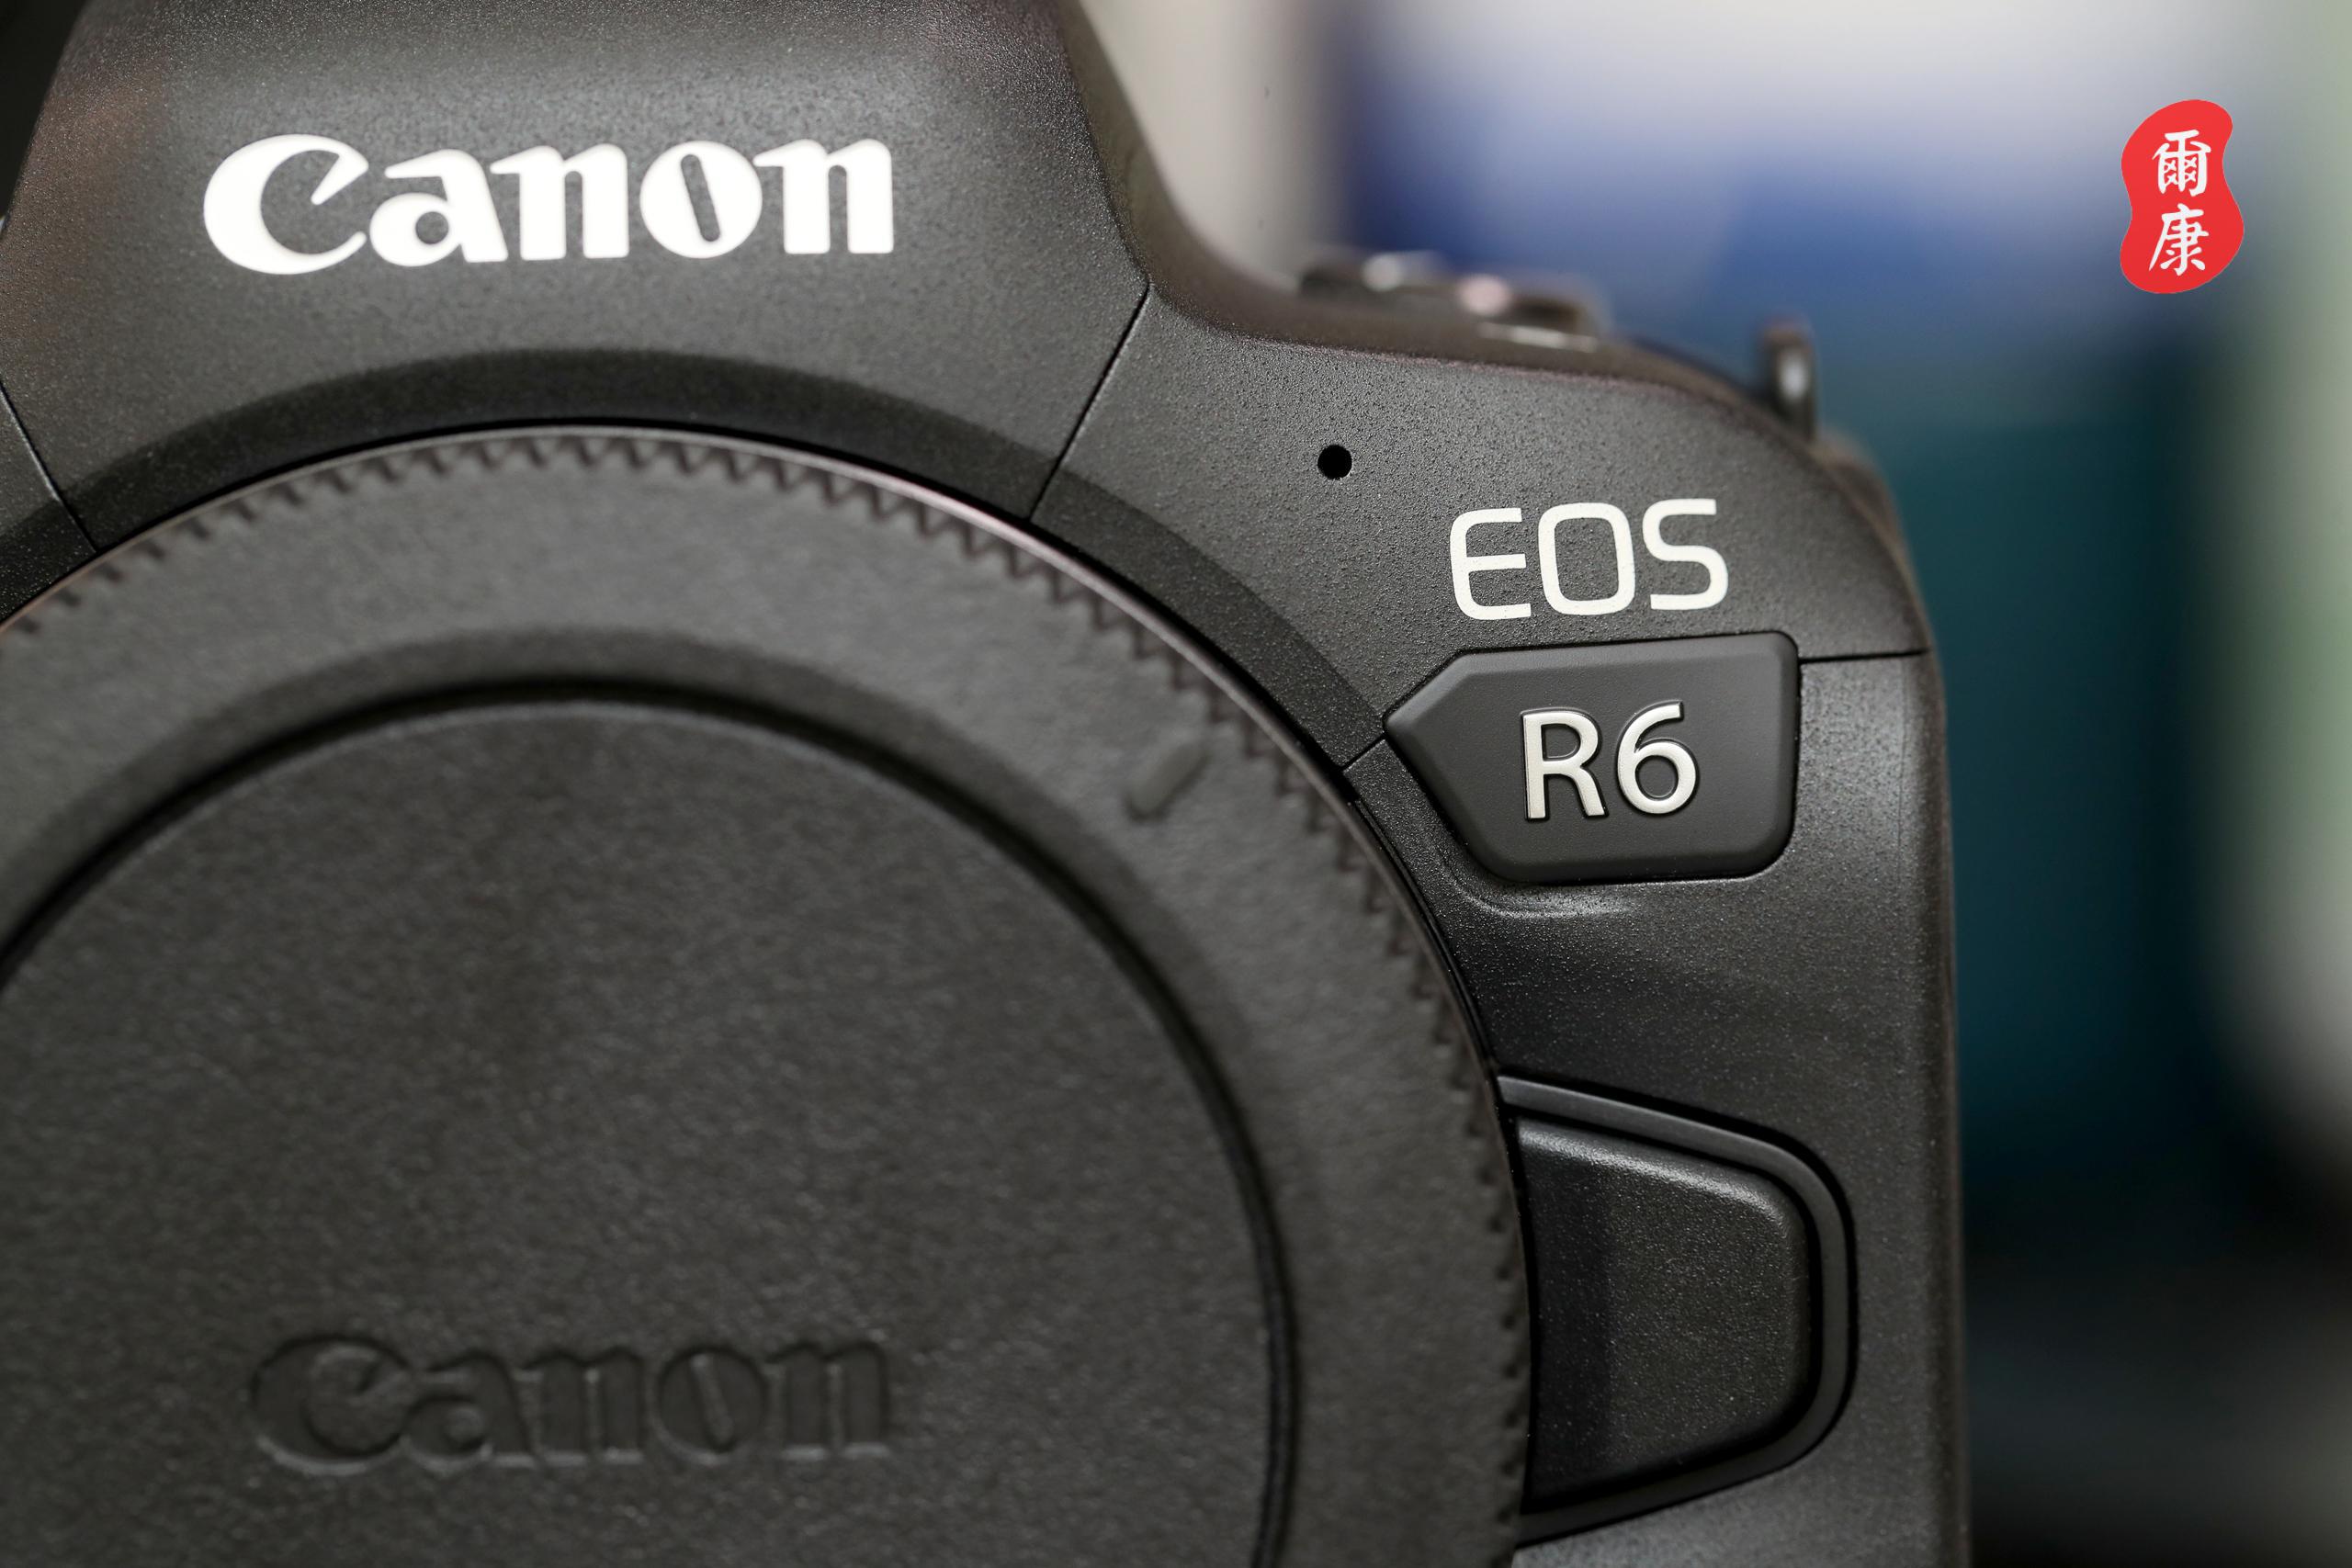 Canon 佳能 EOS R6 全片幅 無反 單眼相機 開箱 及 使用心得